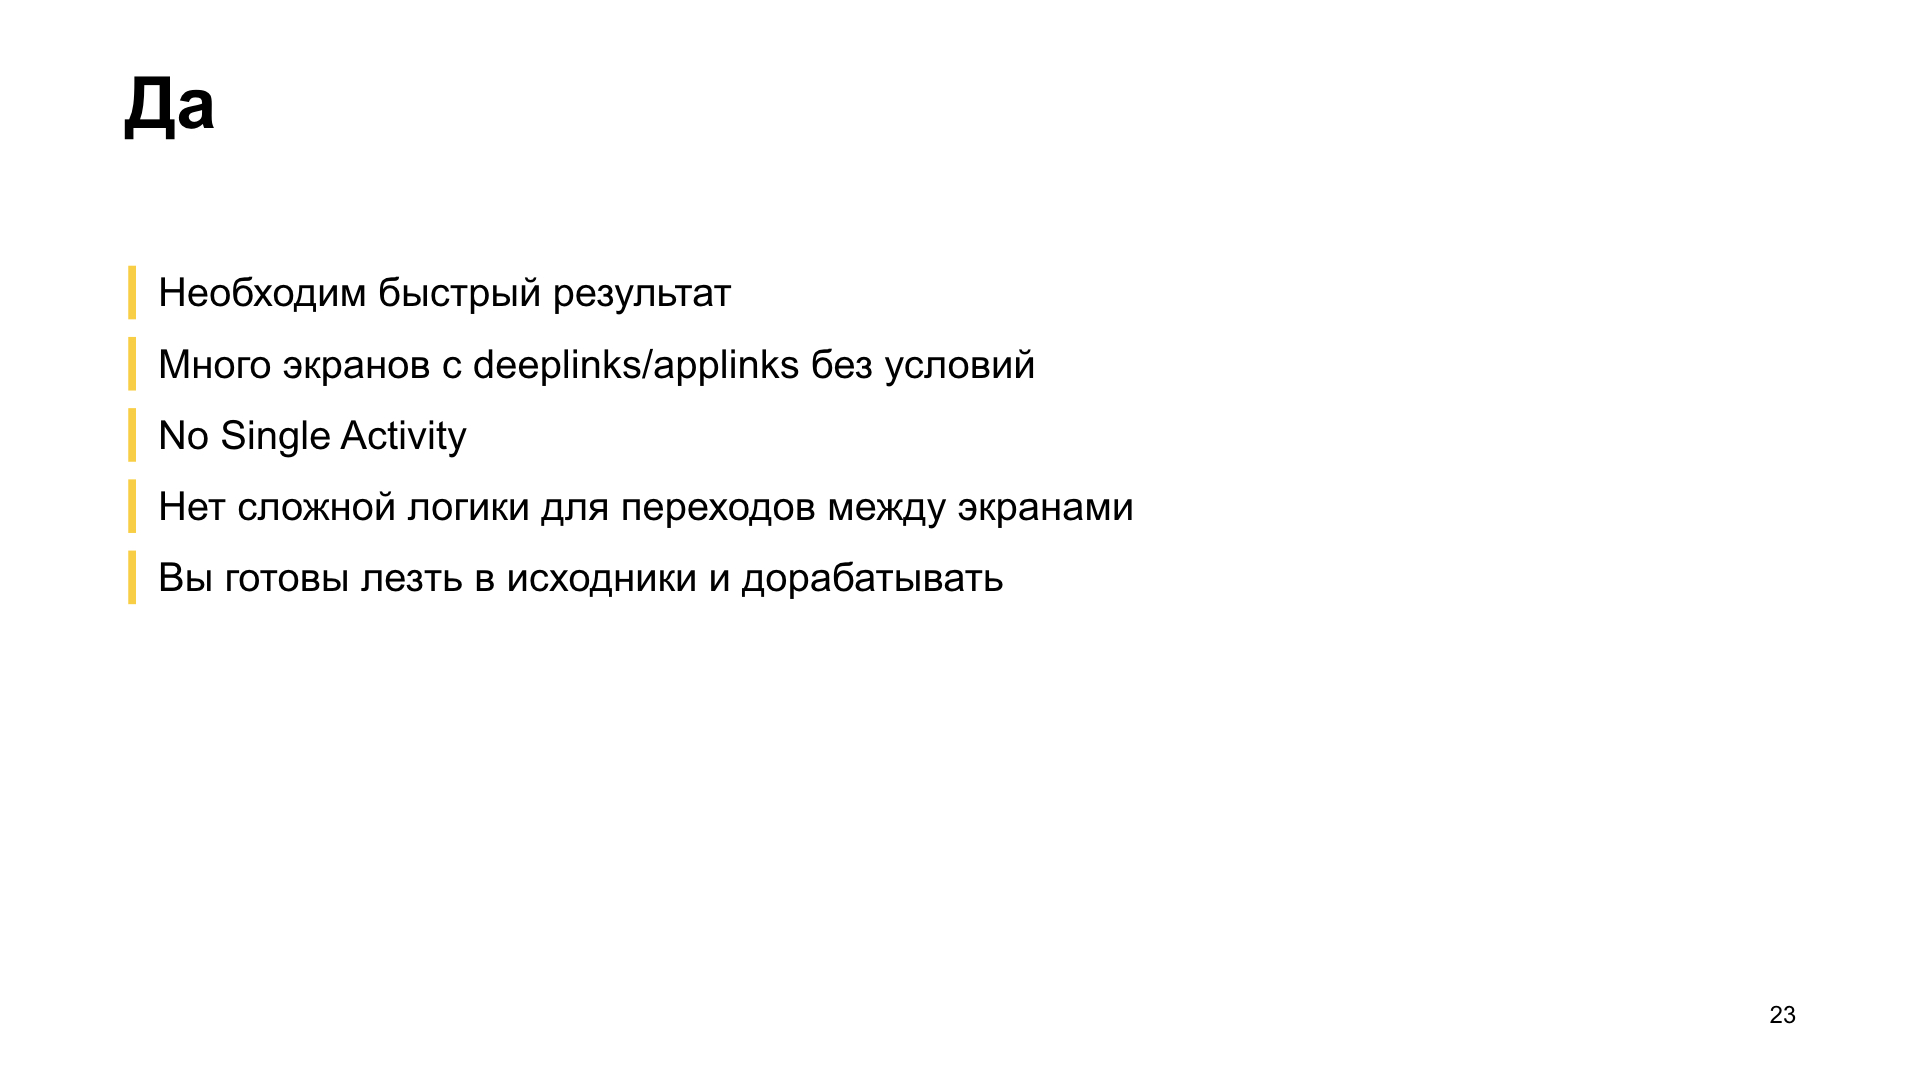 Как мы внедряли навигацию из Jetpack в боевое приложение. Доклад Яндекс.Еды - 22